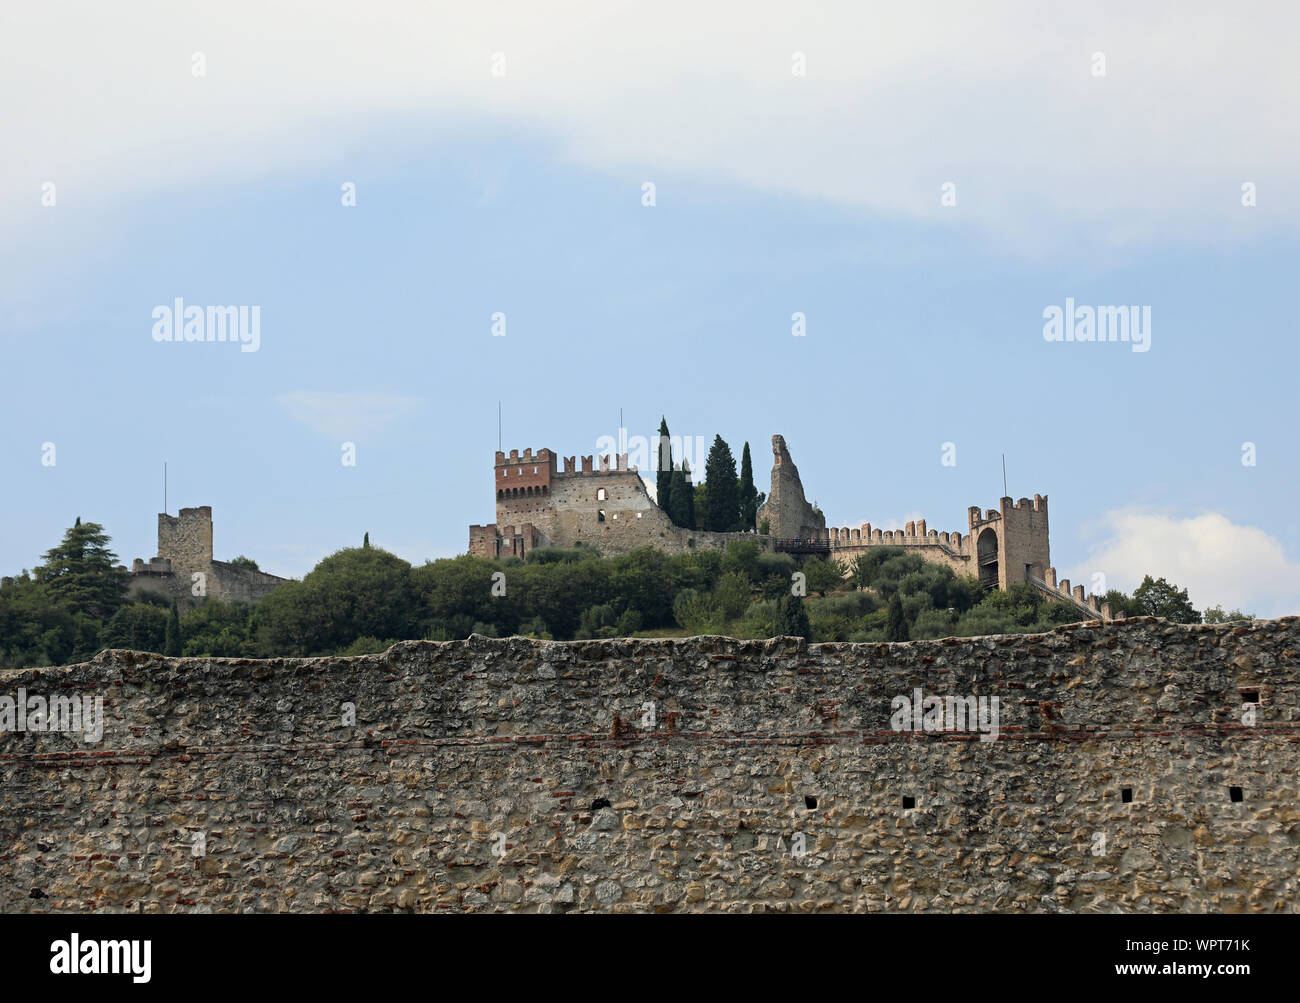 Schiavon, VI, Italie - 1 septembre 2019 : Château supérieur appelé Castello Superiore en langue italienne et mur de la ville Banque D'Images